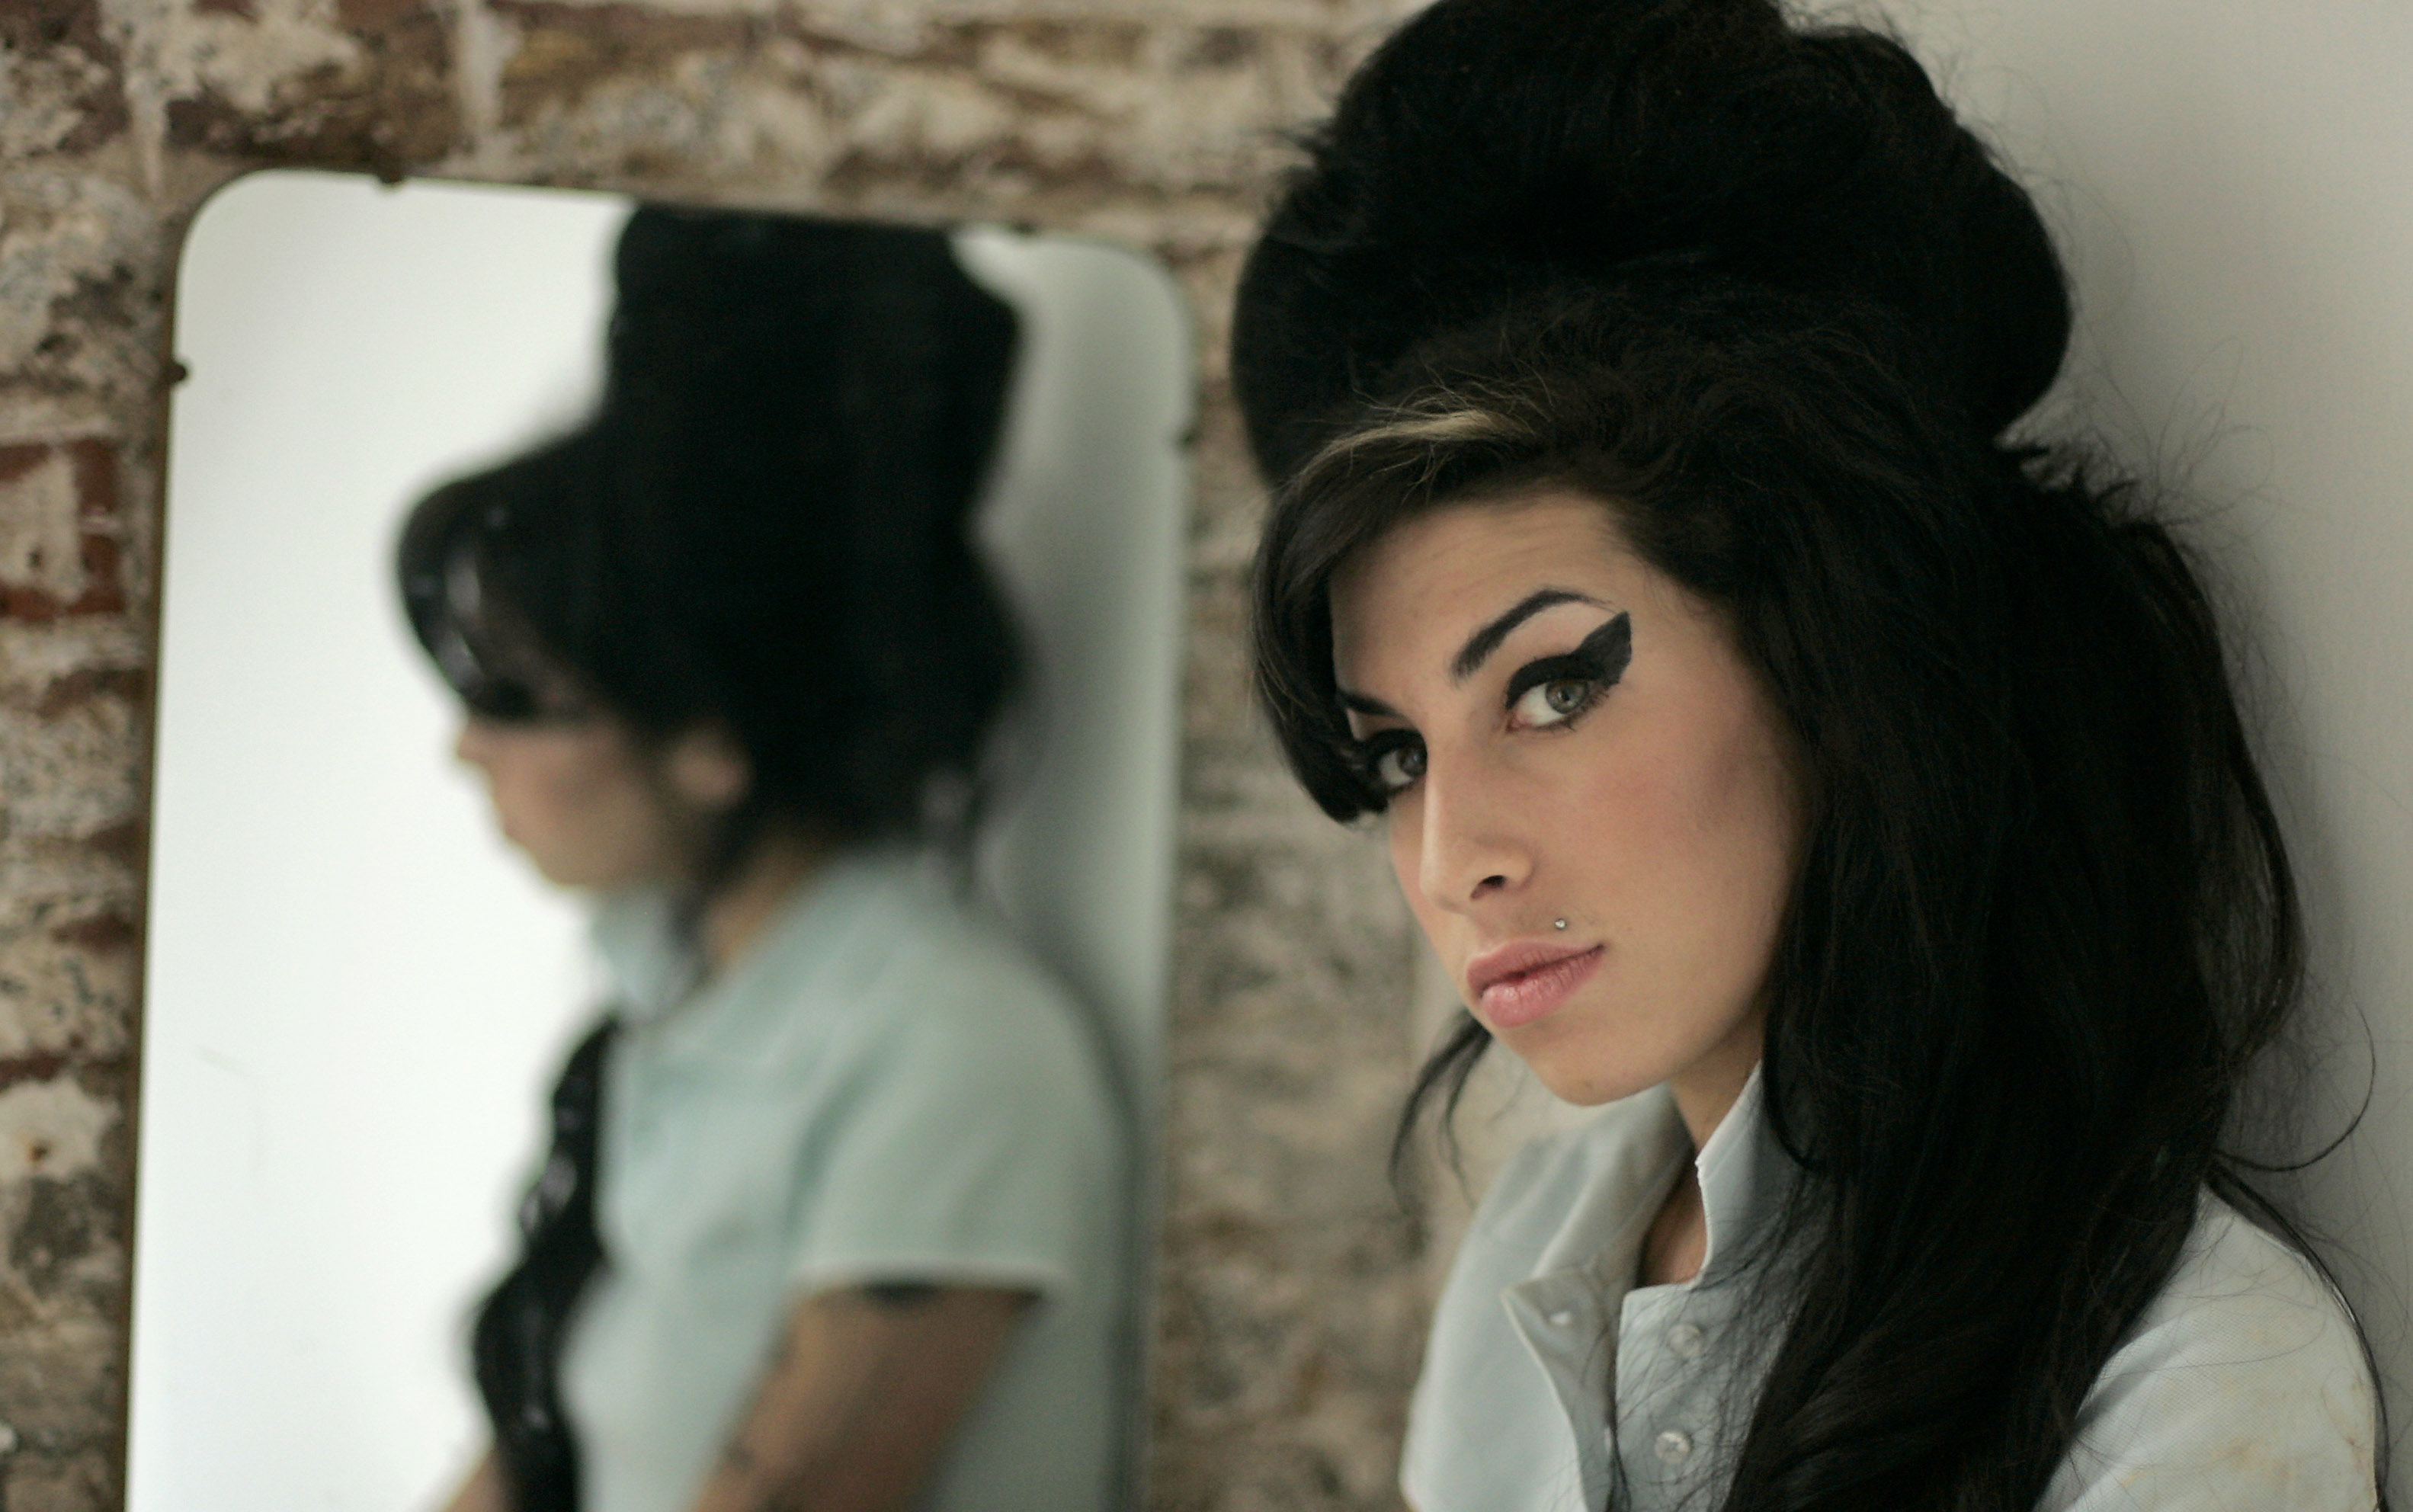 
23 juli – Amy Winehouse, 27, brittisk soul-, jazz- och R&amp;B-sångare. Hade kraftiga problem med droger.